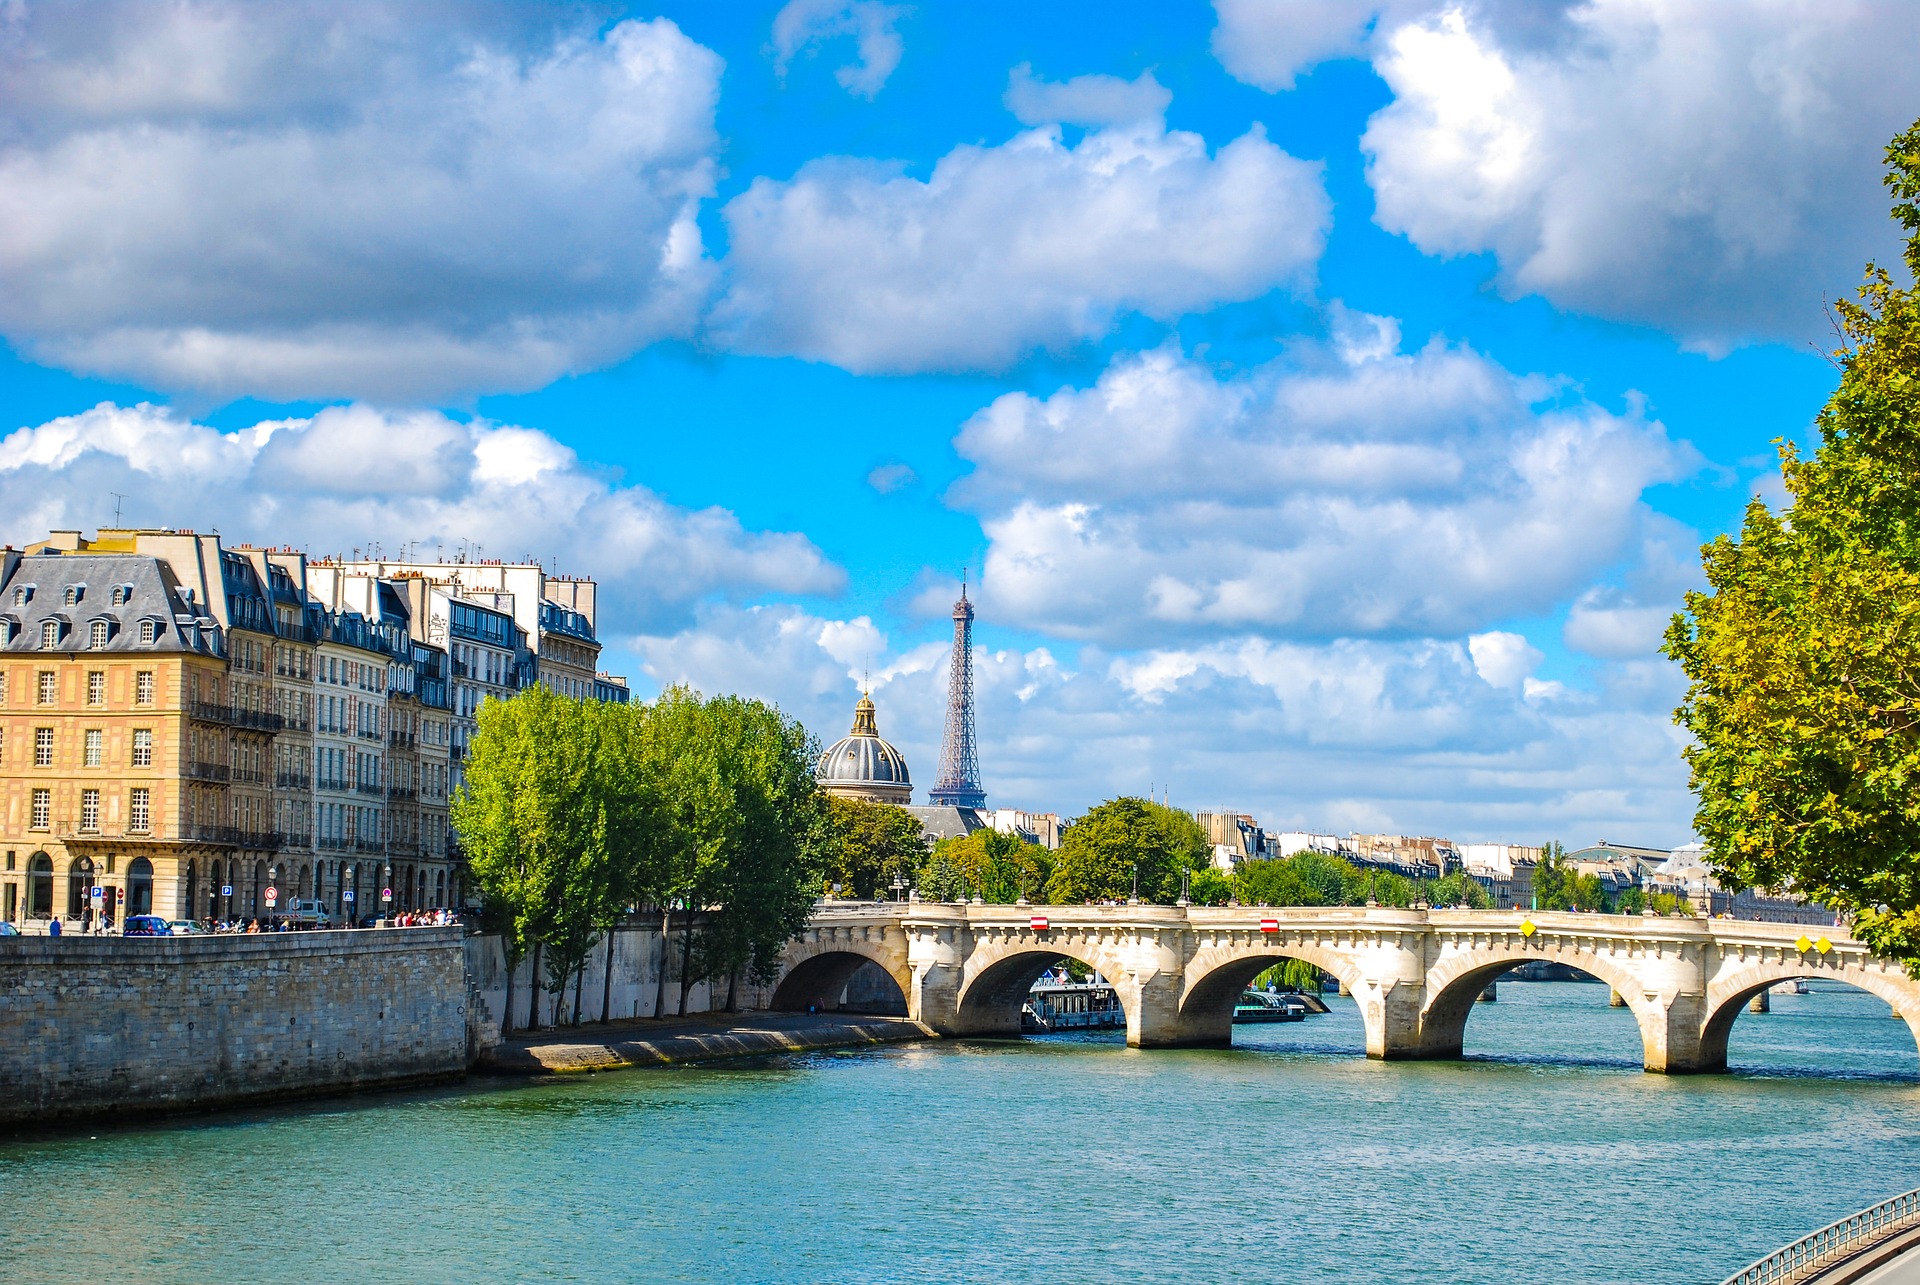 Le seine. Река сена во Франции. Река сена в Париже. Сена (река) реки Франции. Французская река сена.